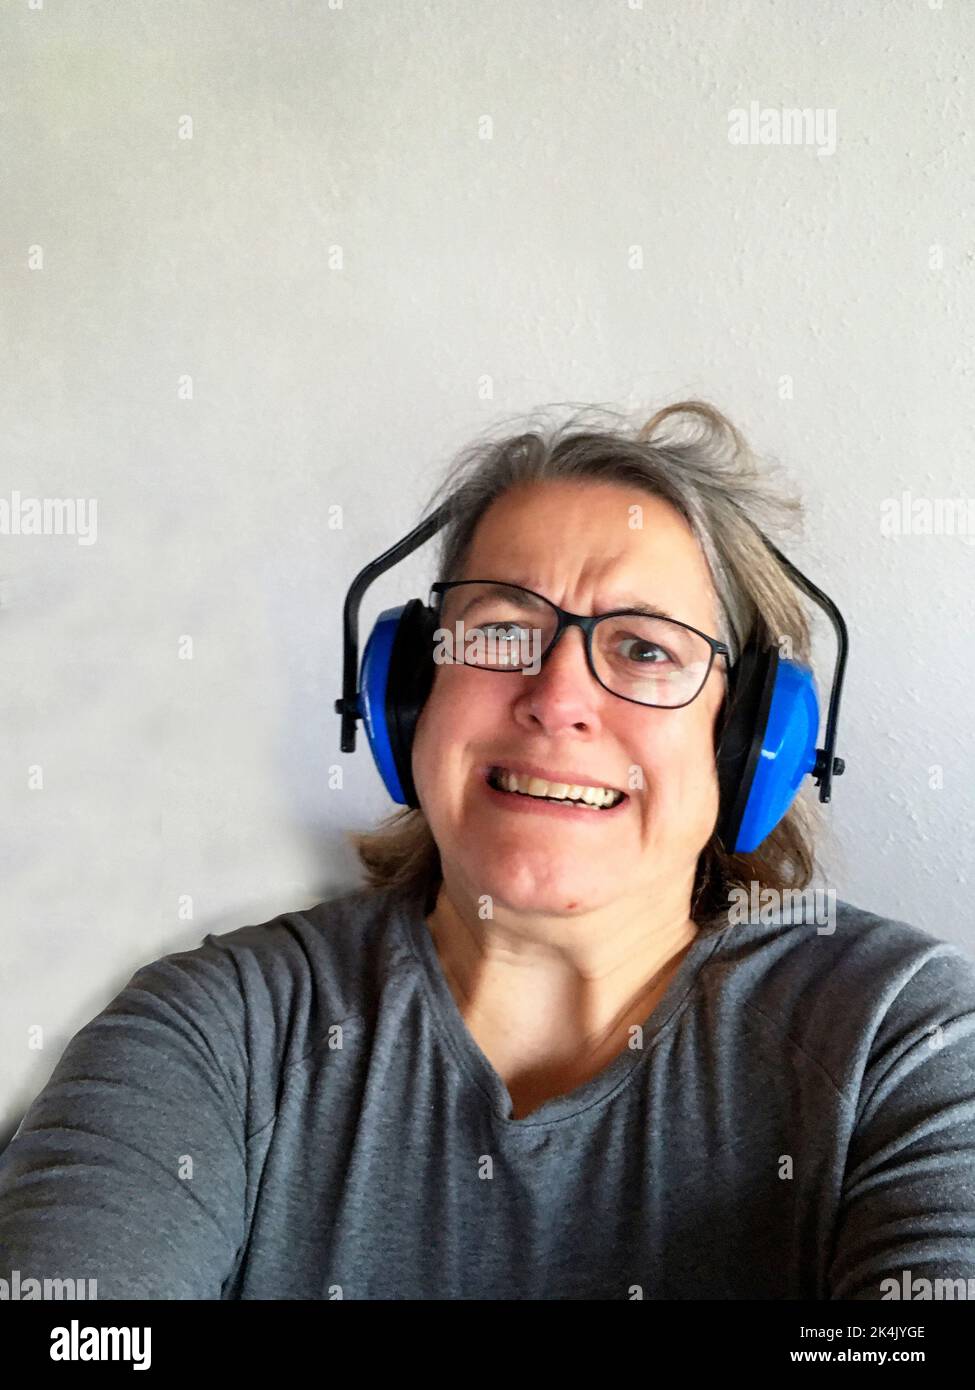 Frau mit Kopfhörer mit zerzausten Haaren, genervt vom Lärm Foto Stock